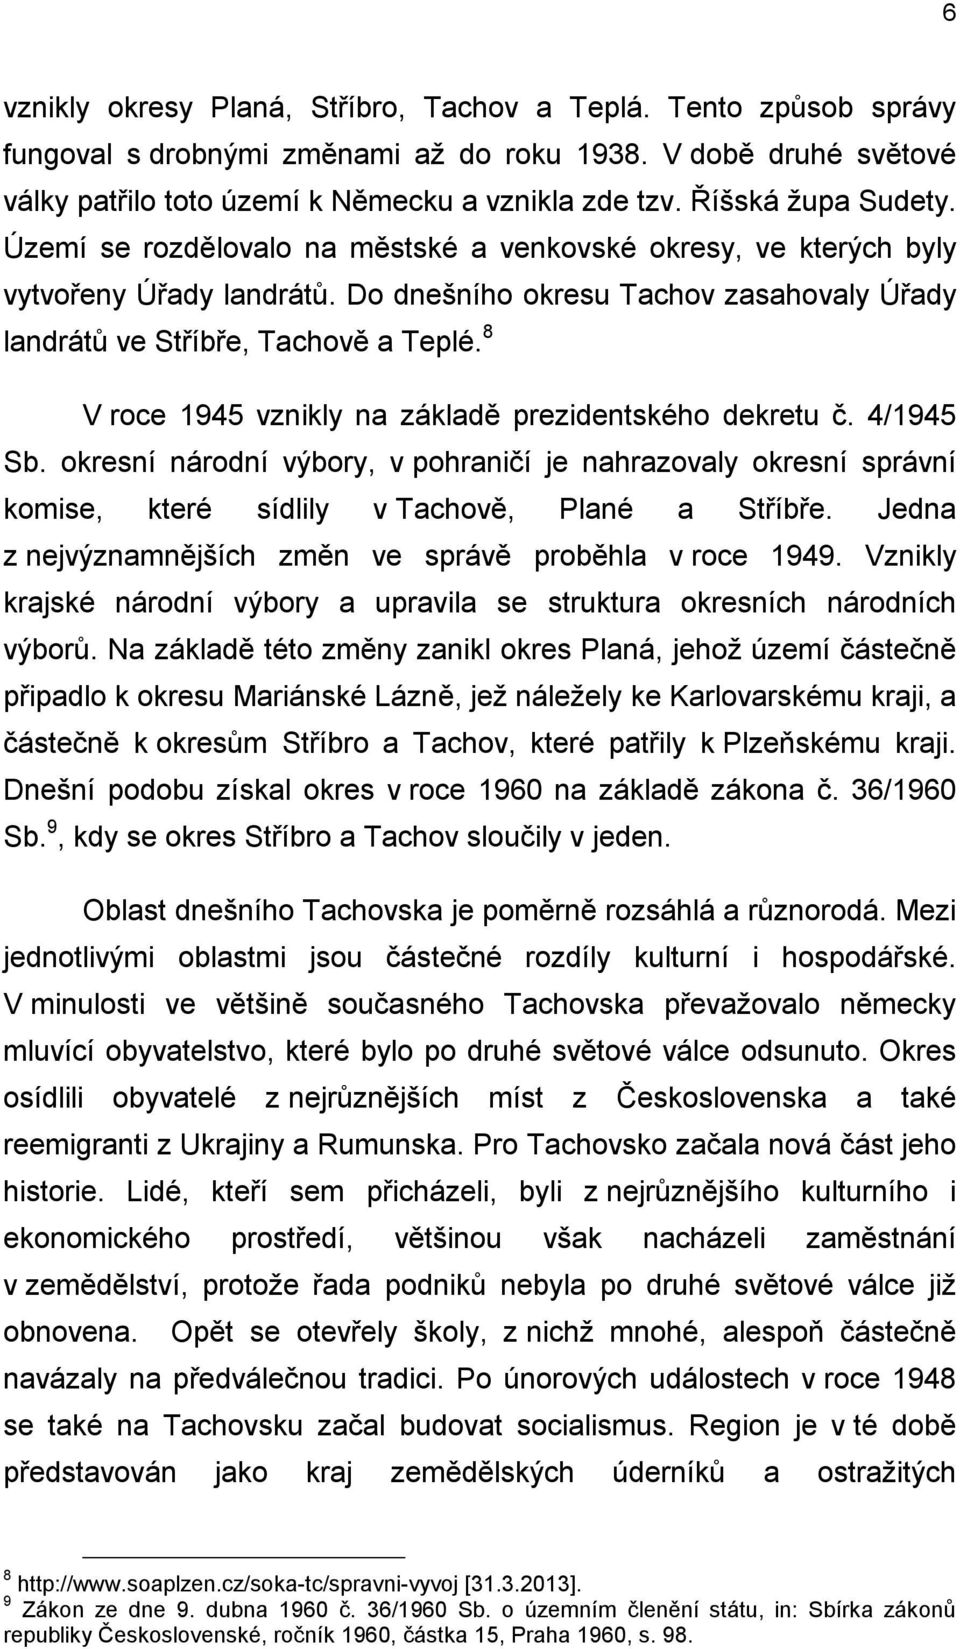 8 V roce 1945 vznikly na základě prezidentského dekretu č. 4/1945 Sb. okresní národní výbory, v pohraničí je nahrazovaly okresní správní komise, které sídlily v Tachově, Plané a Stříbře.